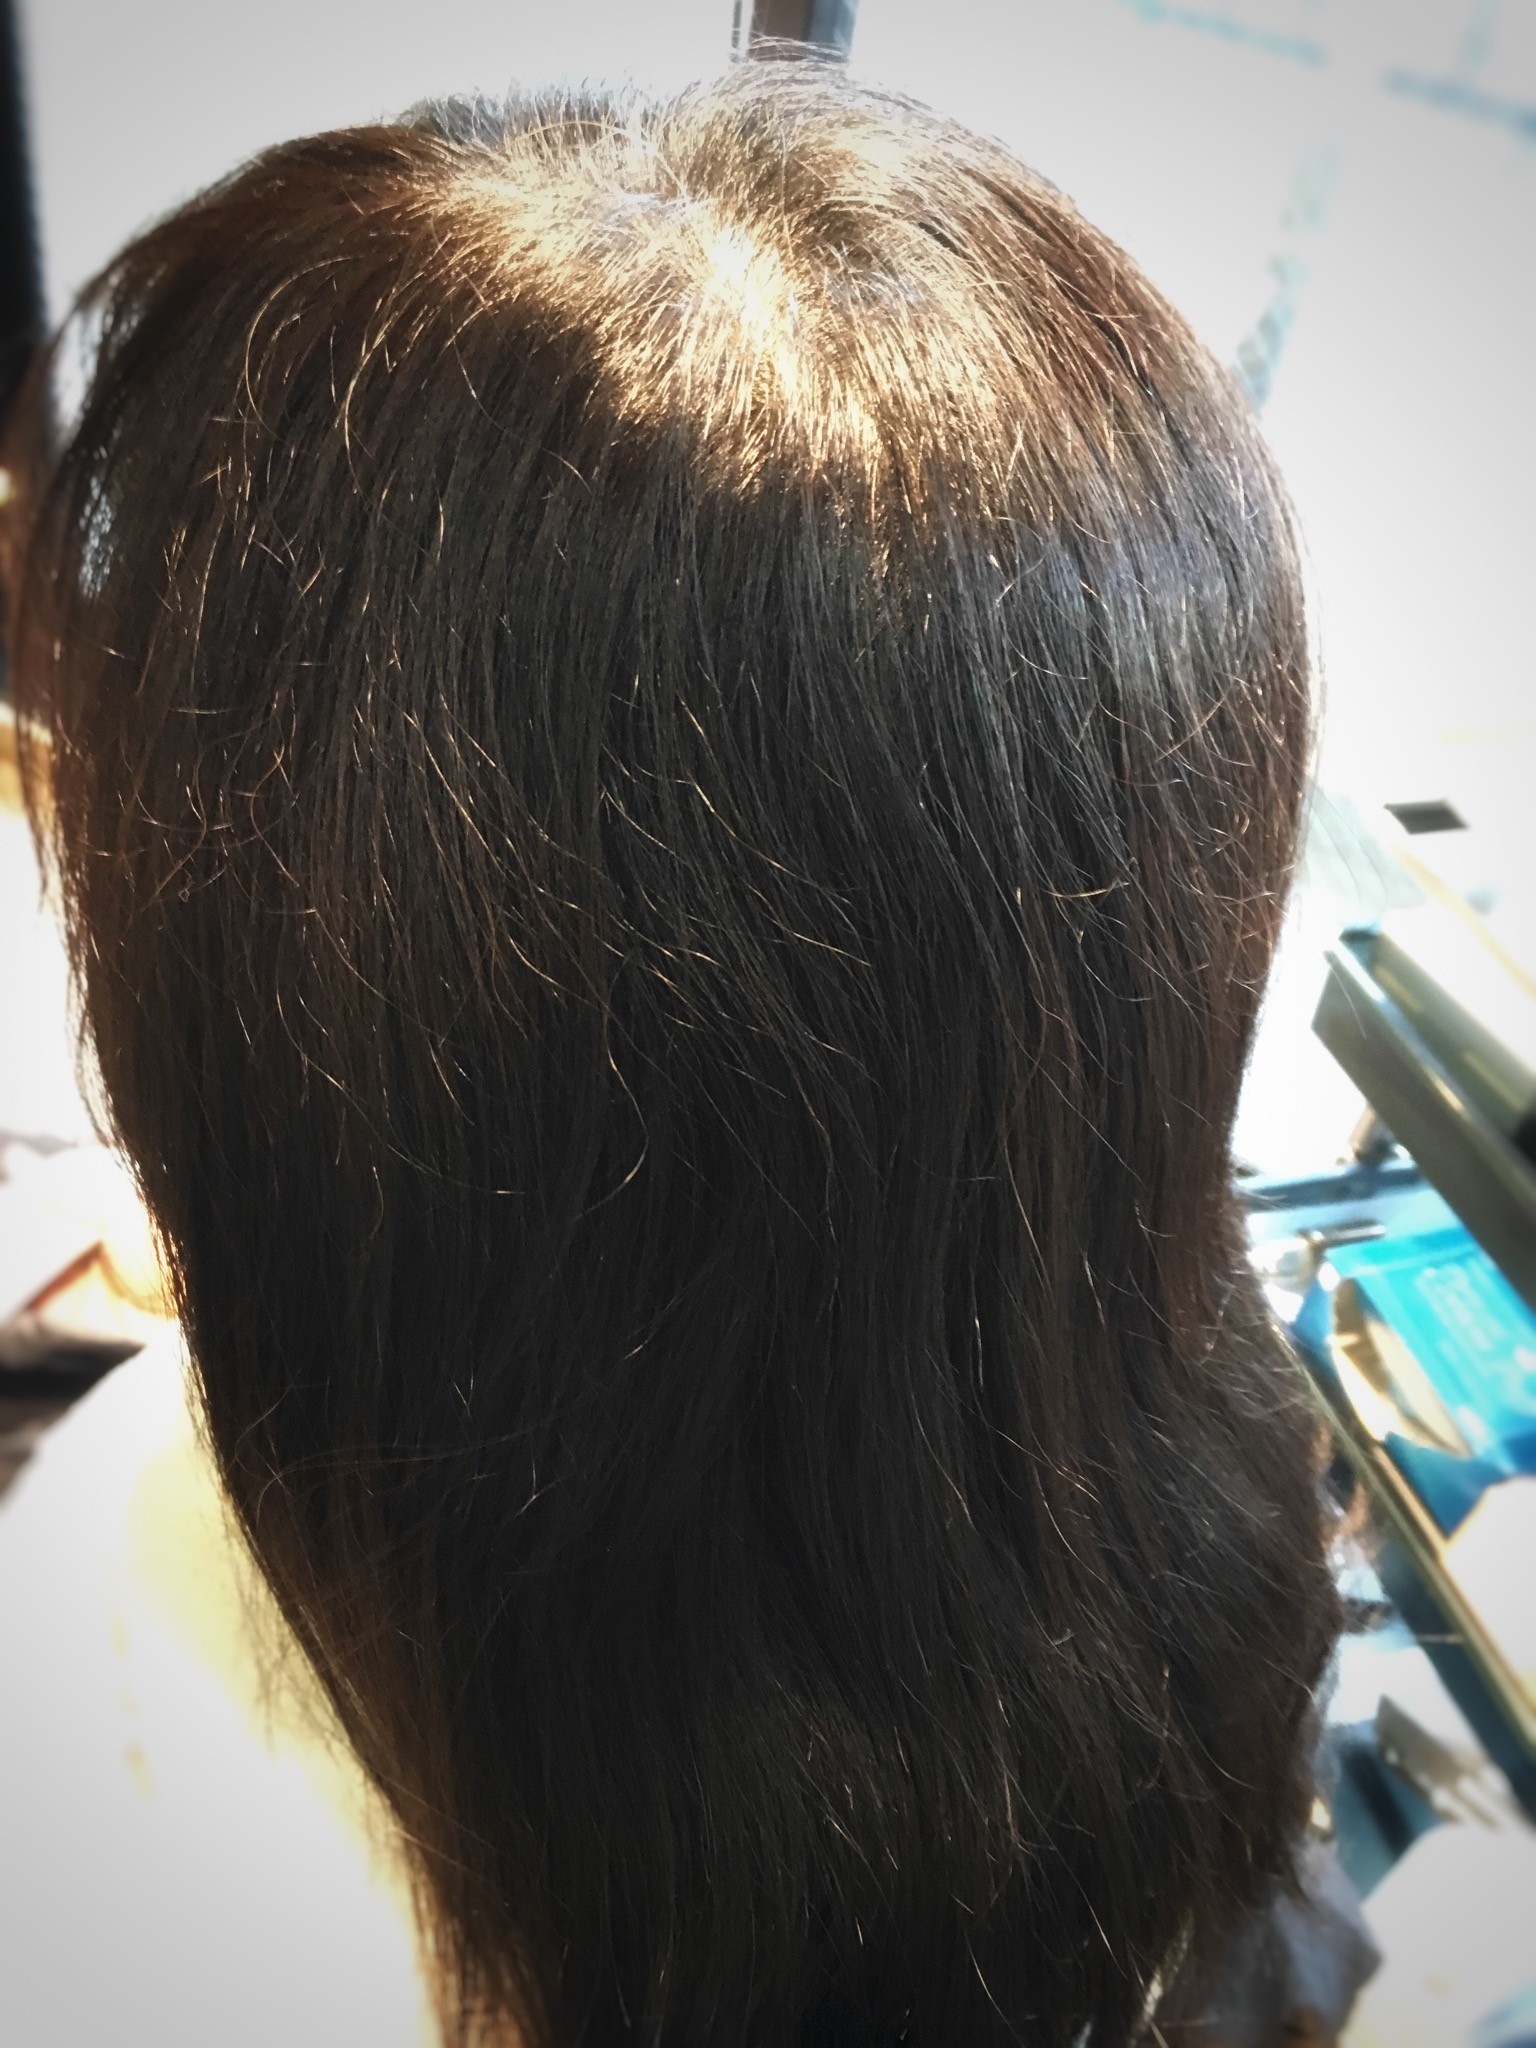 あほ毛がチリチリ 抑える方法と直し方について 神戸三宮の美容室プライベートヘアサロンsur